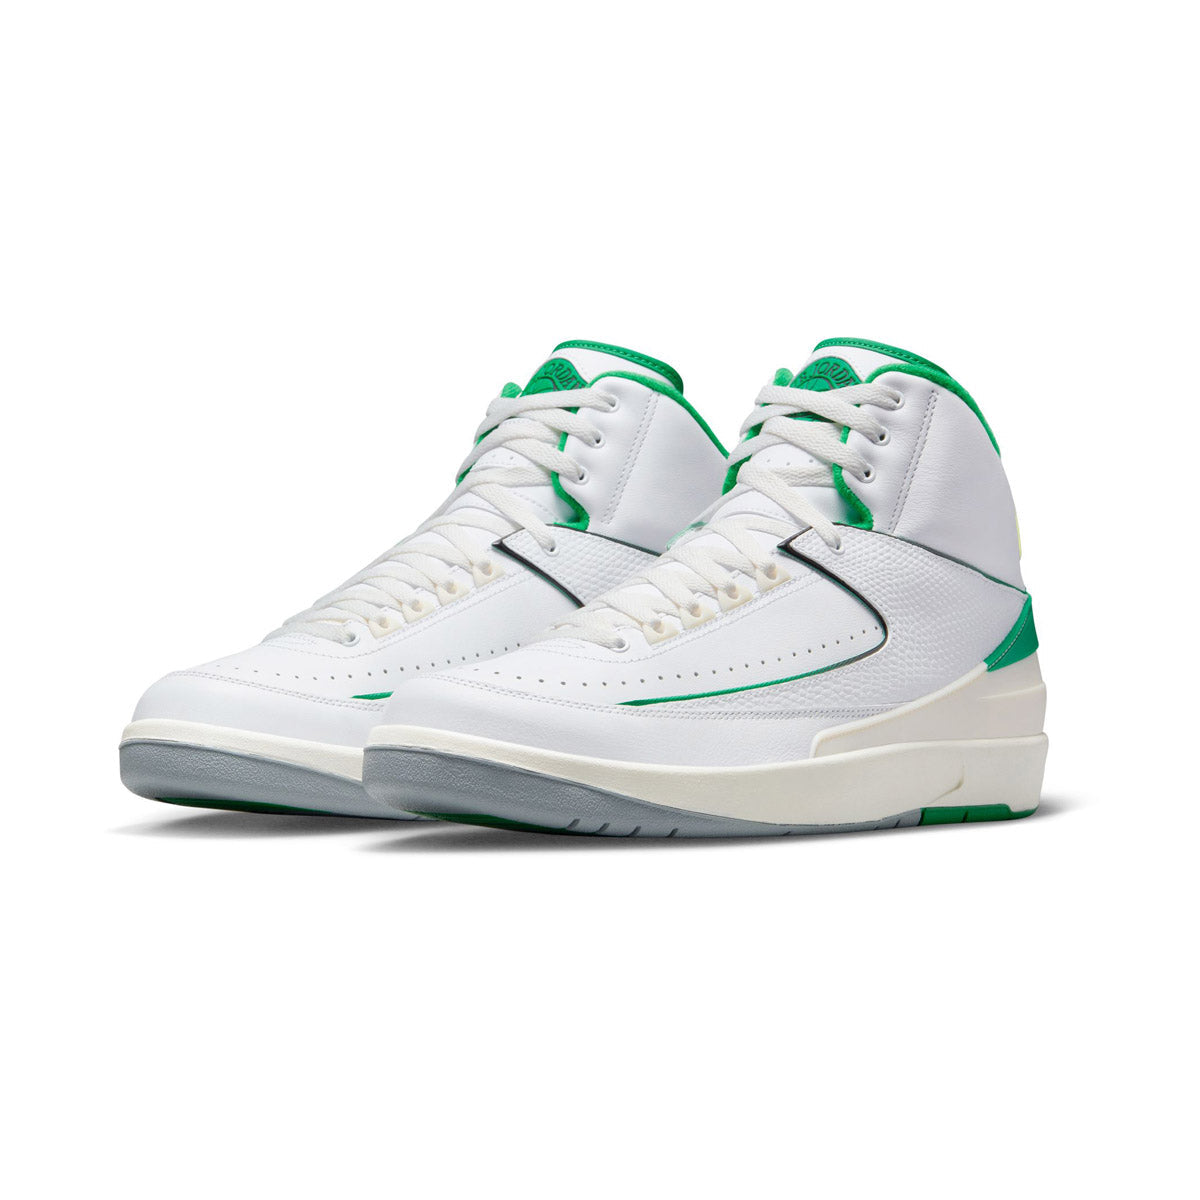 Nike Air Jordan 11 Retro Low Bred 528895-012 Men's Shoes